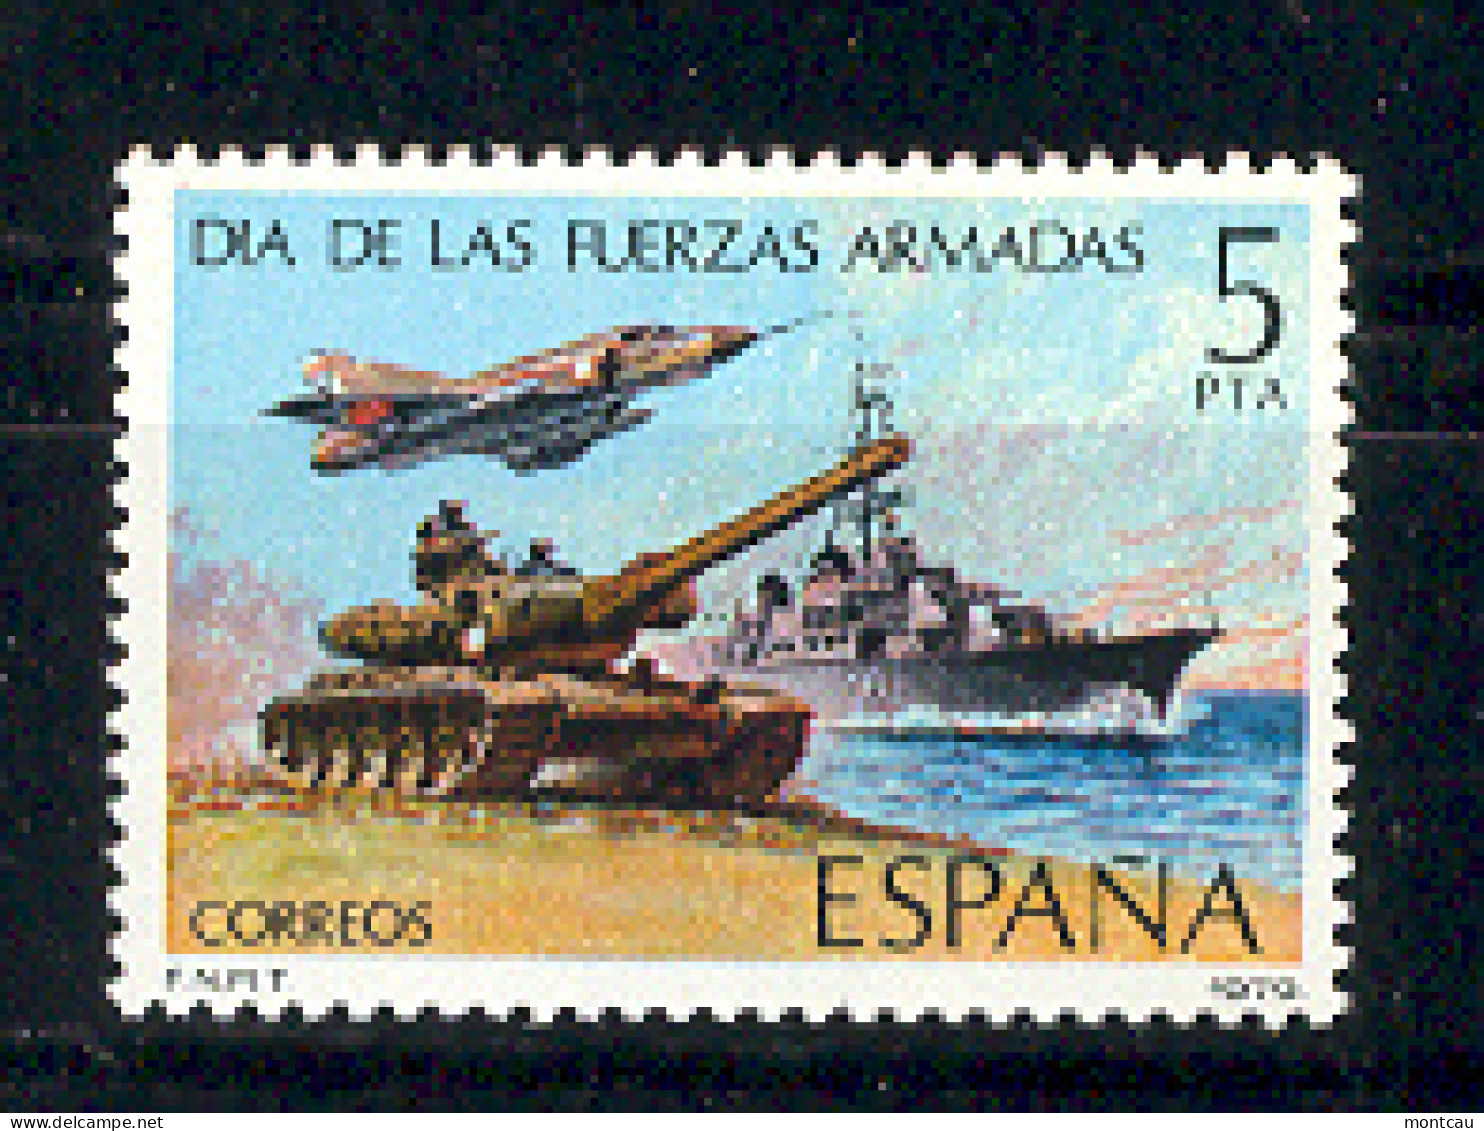 Spain. 1979. Fuerzas Armadas Ed 2525 (**) - Nuevos